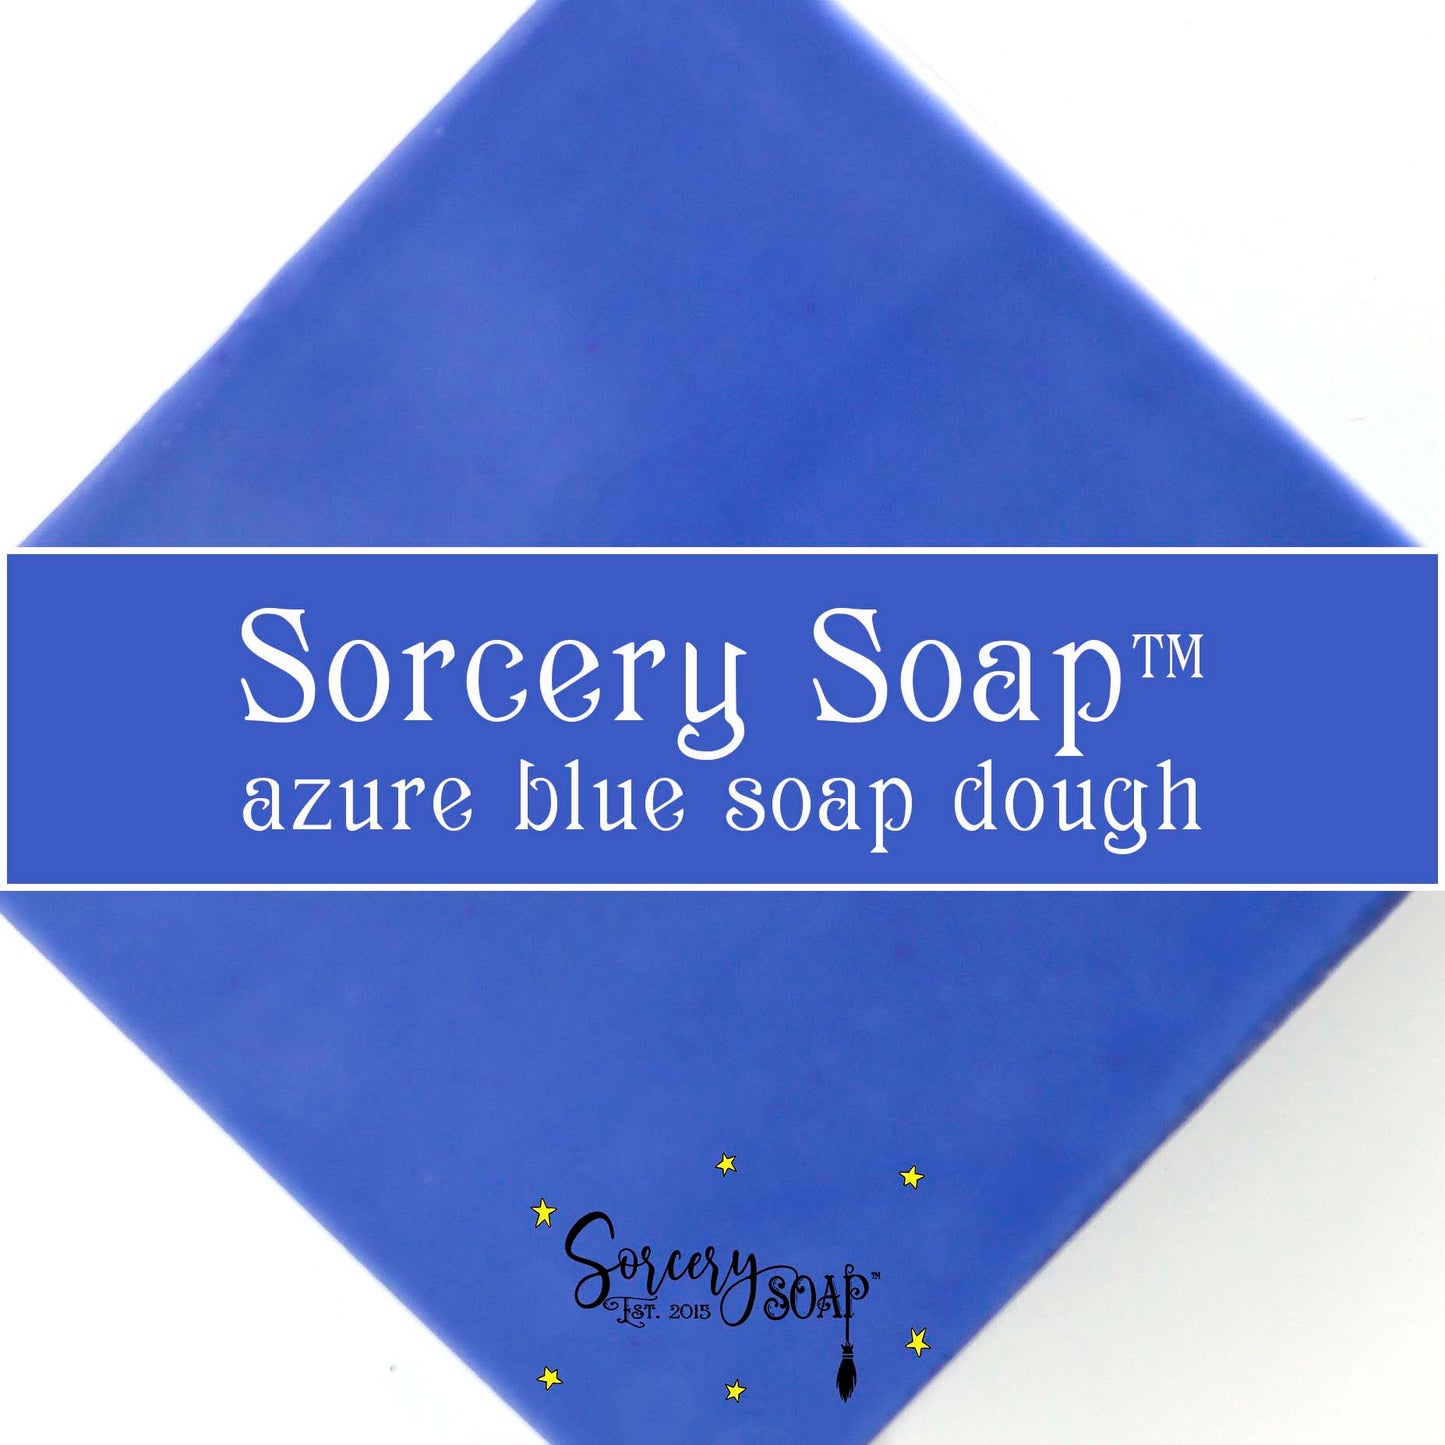 Blue Soap Dough